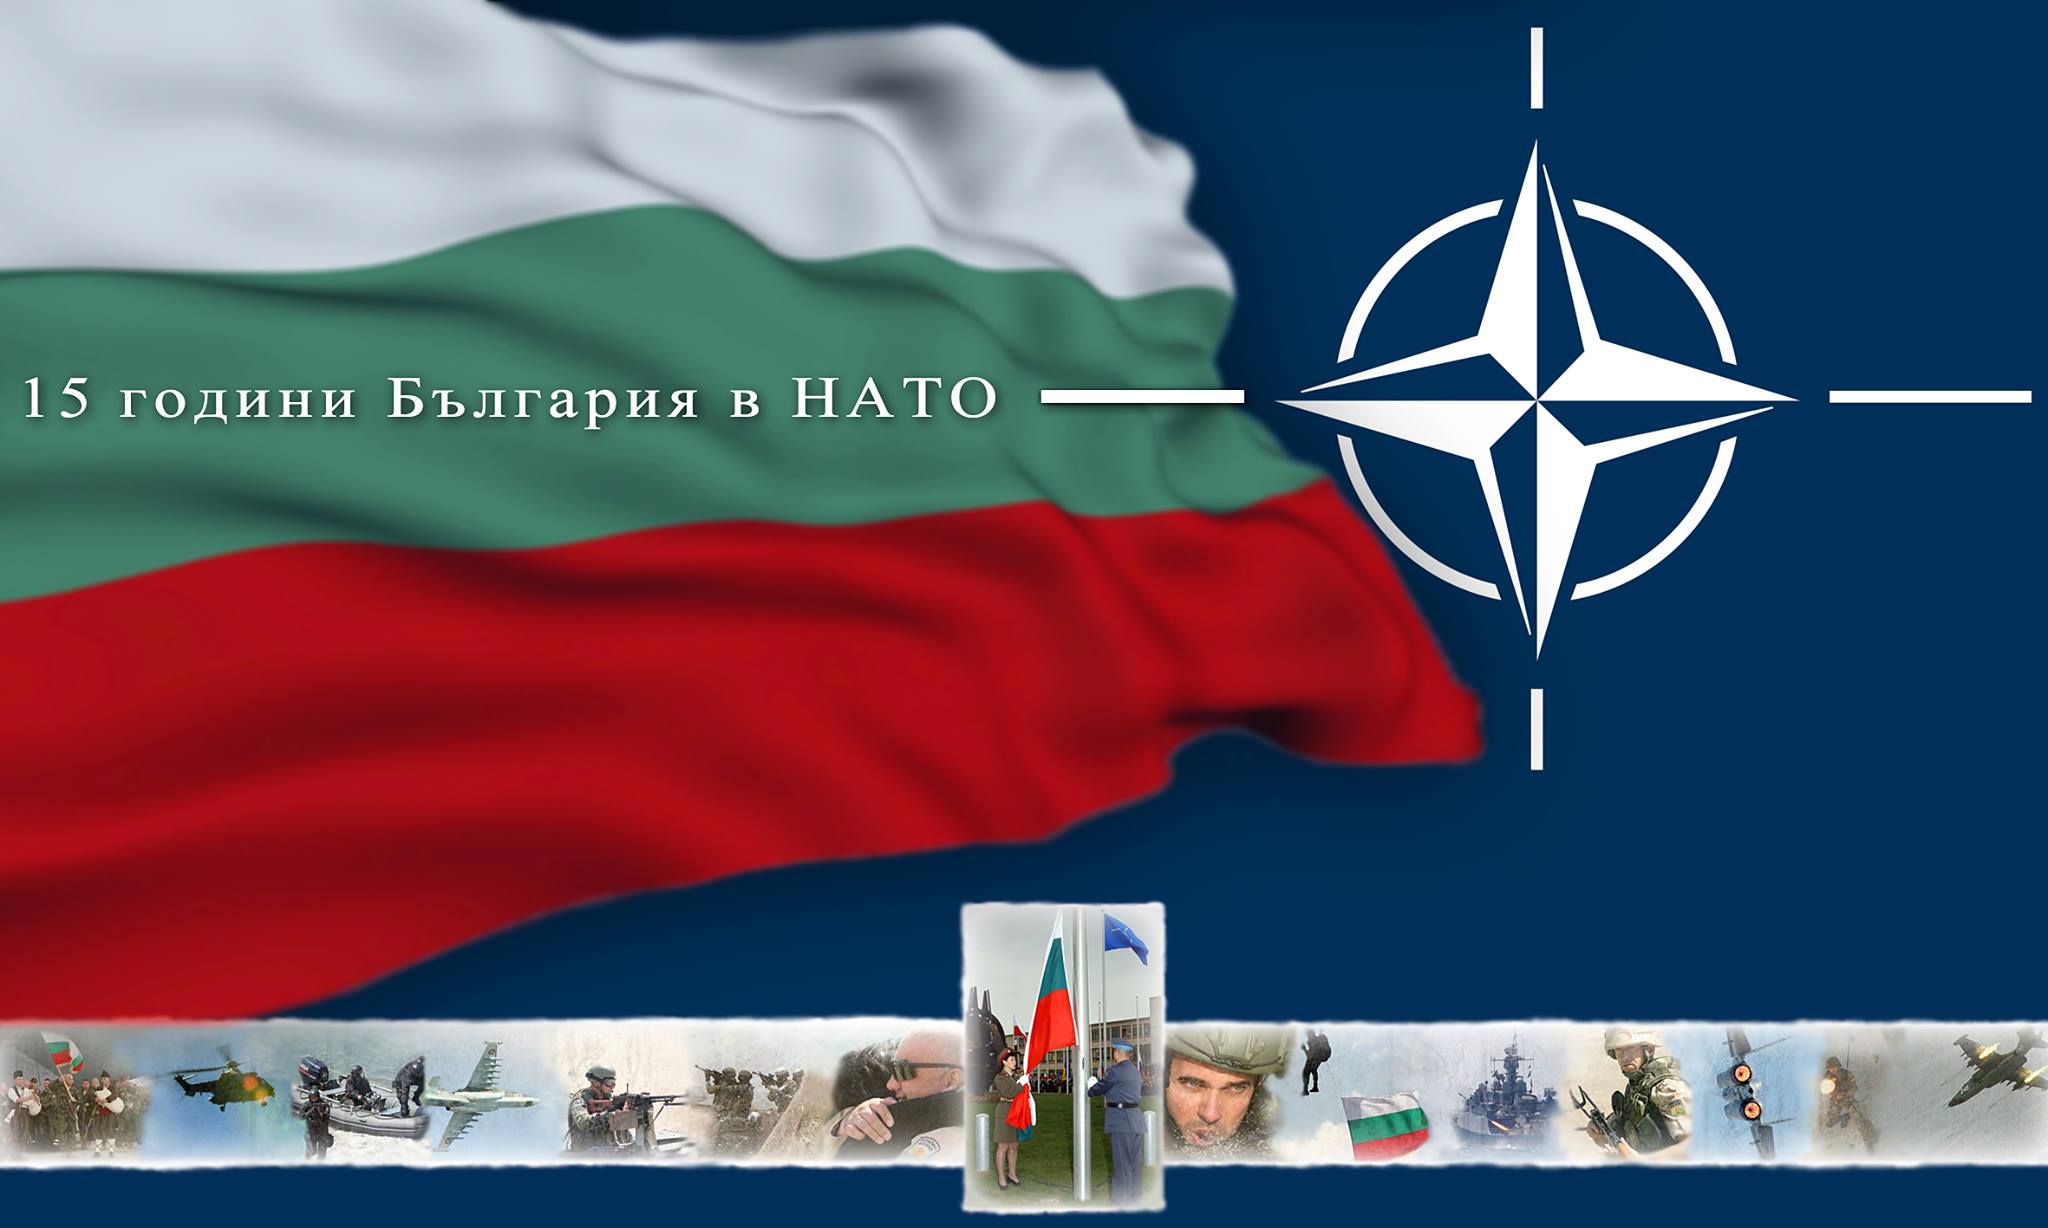 Министерството на отбраната представя пред жителите и гостите на София фотоизложбата „15 години България в НАТО“